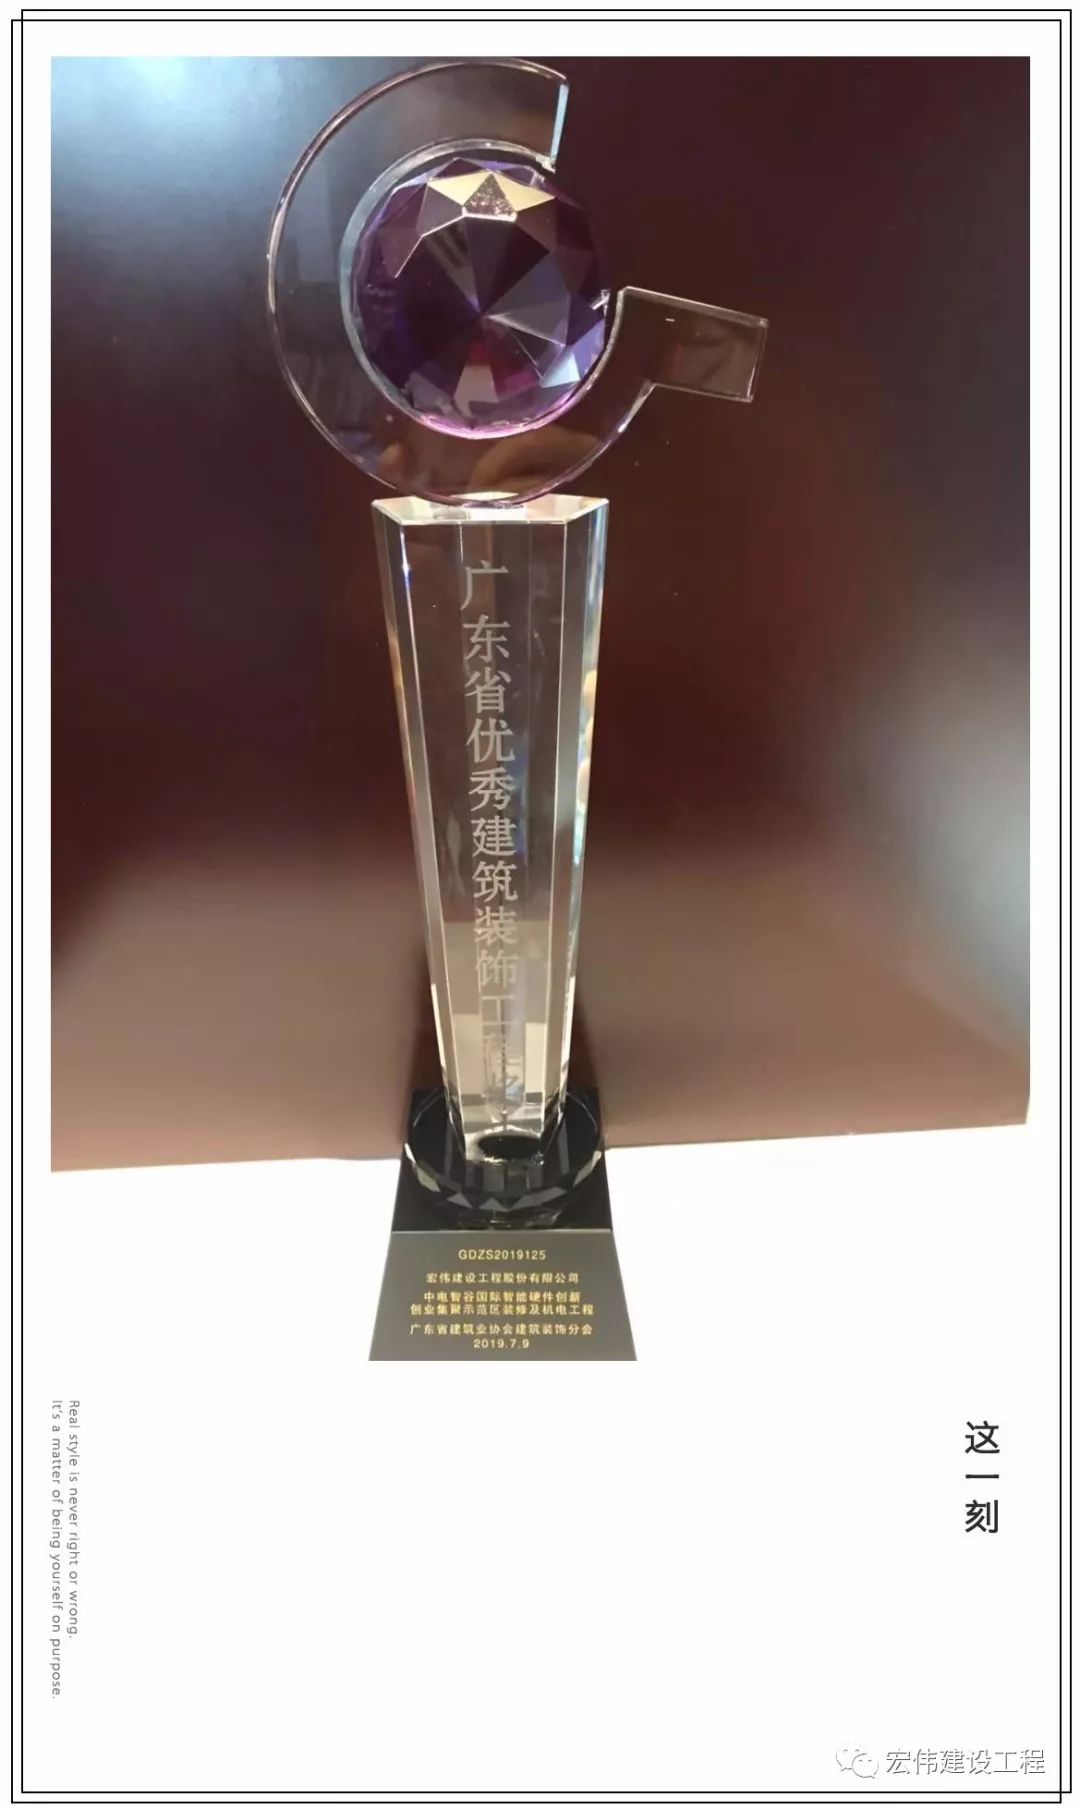 2019年获得了“广东省优秀建筑装饰工程奖”